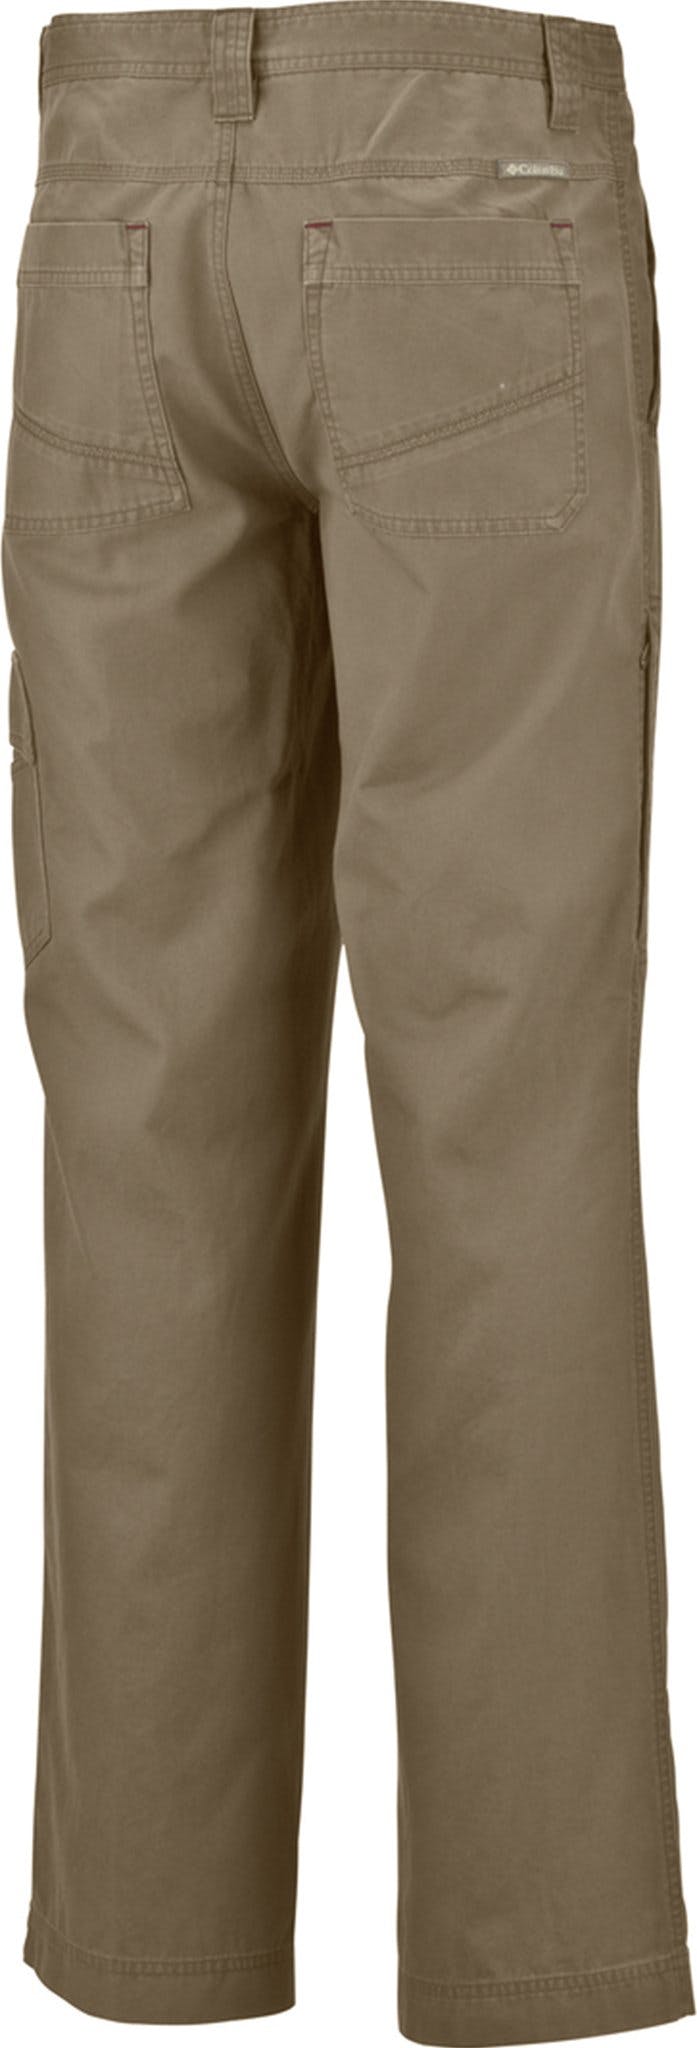 Numéro de l'image de la galerie de produits 2 pour le produit Pantalon grande taille Ultimate ROC - Homme